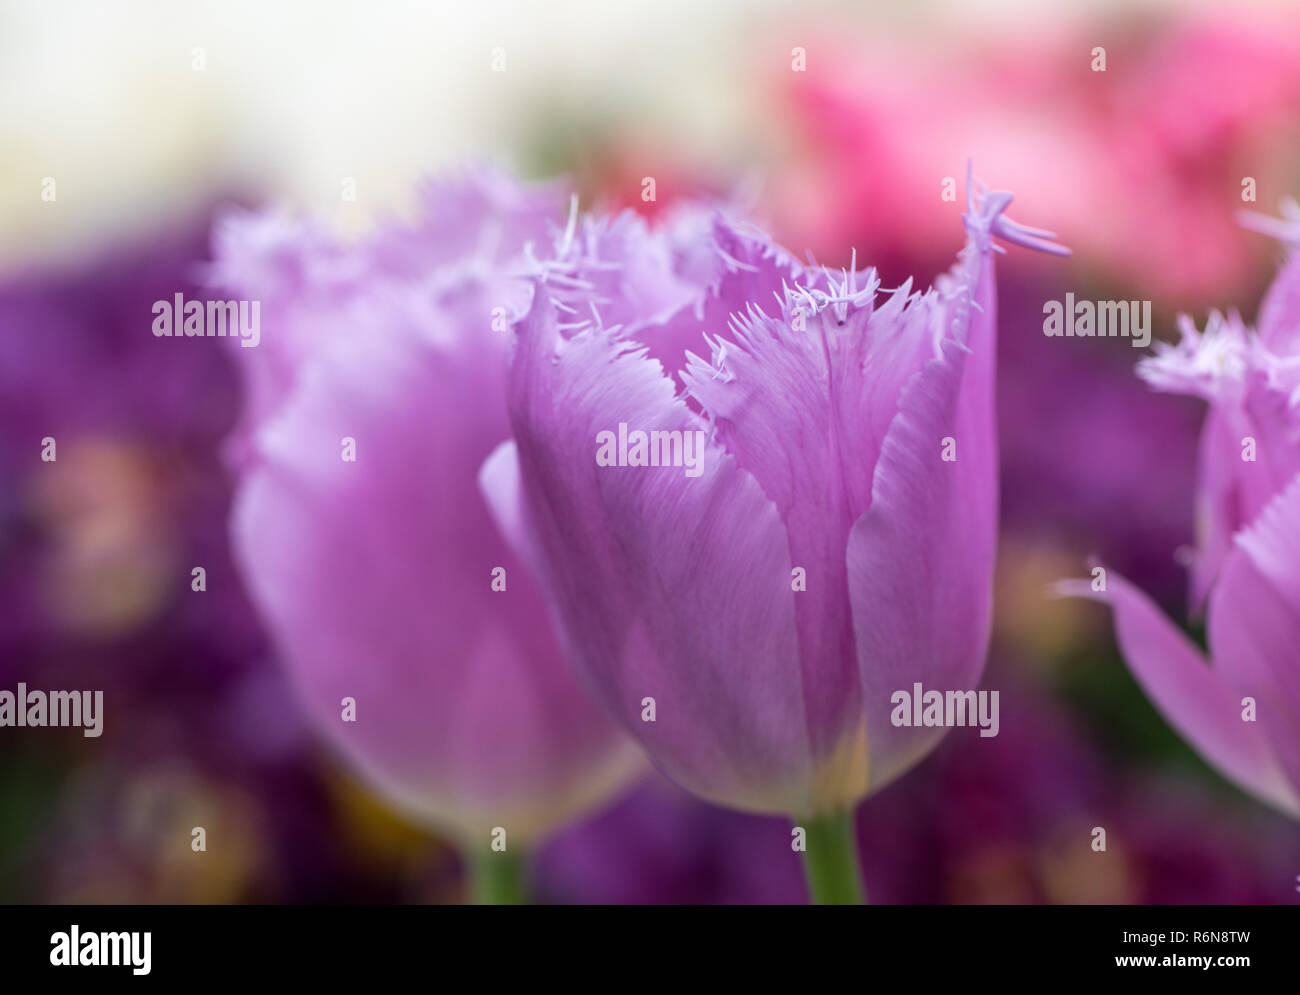 Tulipes frangées fleurir dans un jardin. Tulipes frangées doivent leur nom à partir de la bordure effilochée distincts sur leurs pétales. Banque D'Images